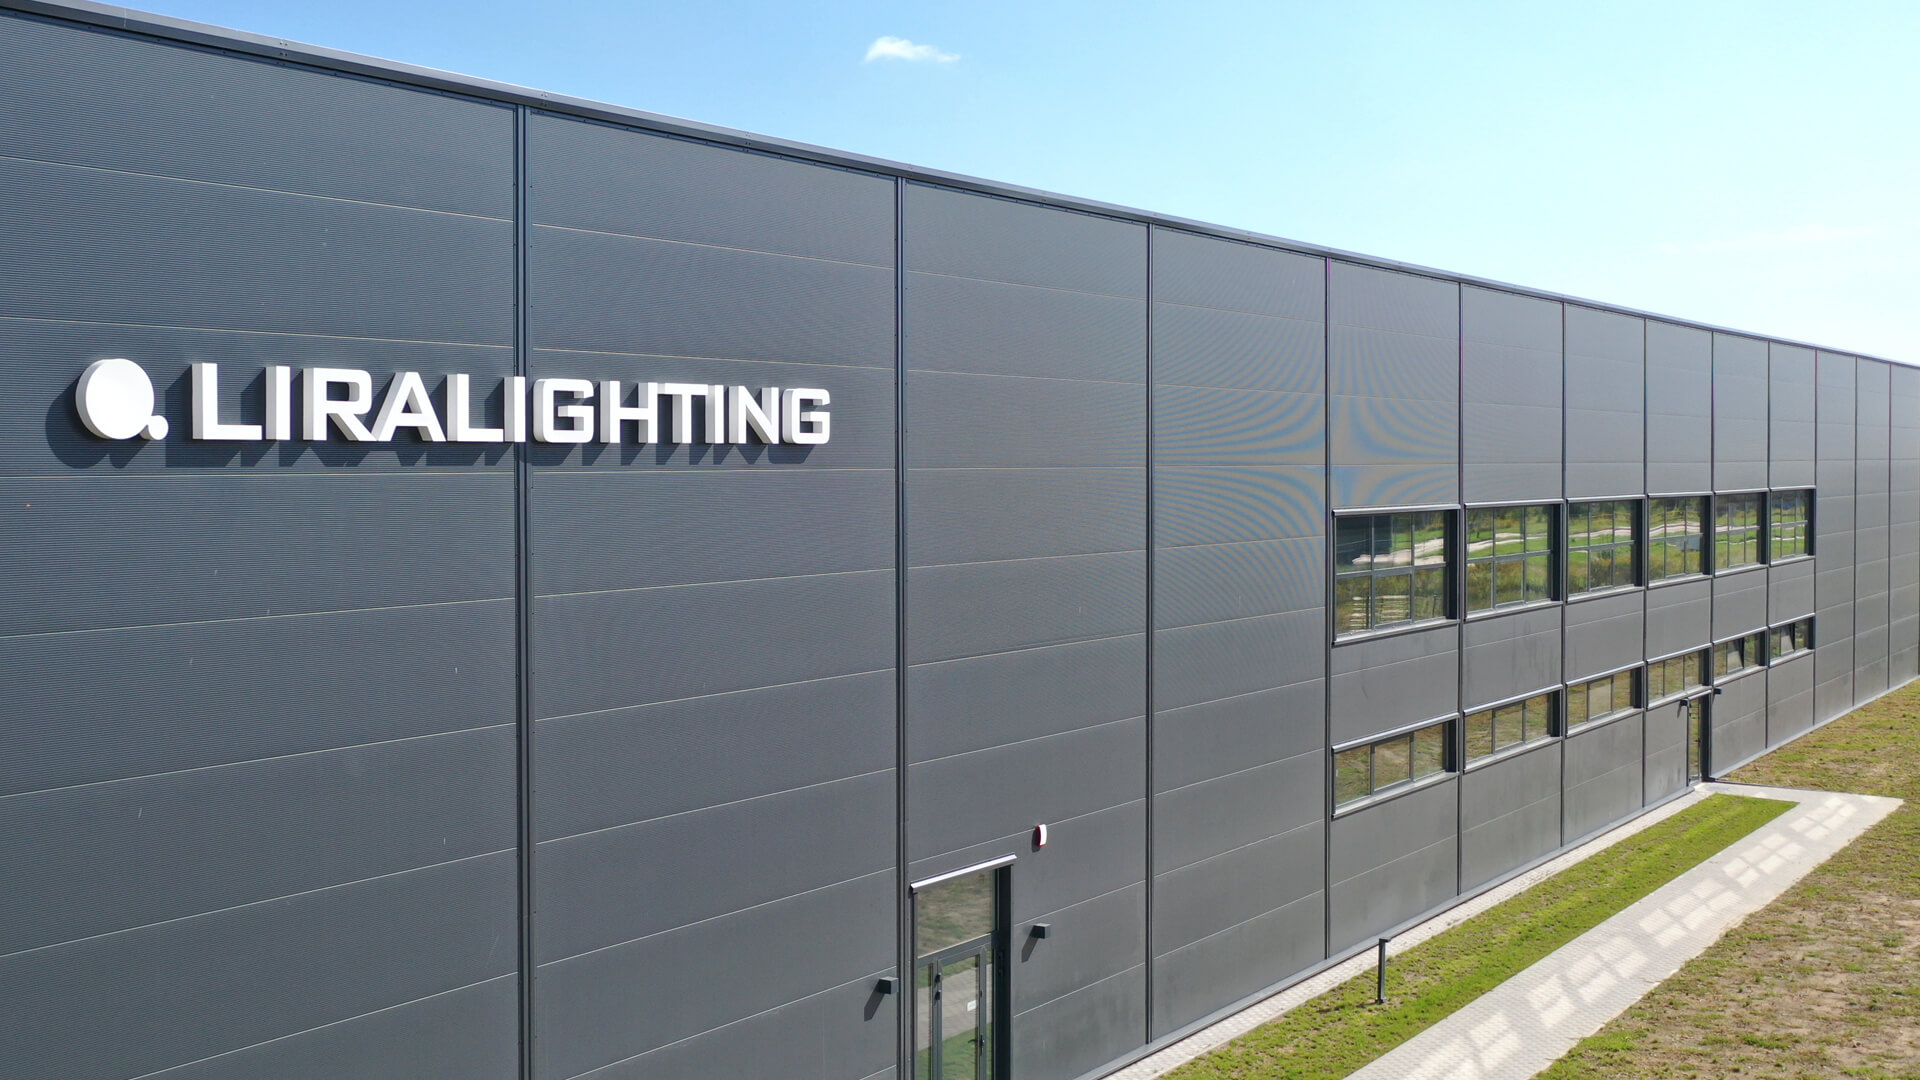 Lettres lumineuses Liralighting - Lettres lumineuses 3D à LED sur un hall industriel en blanc.